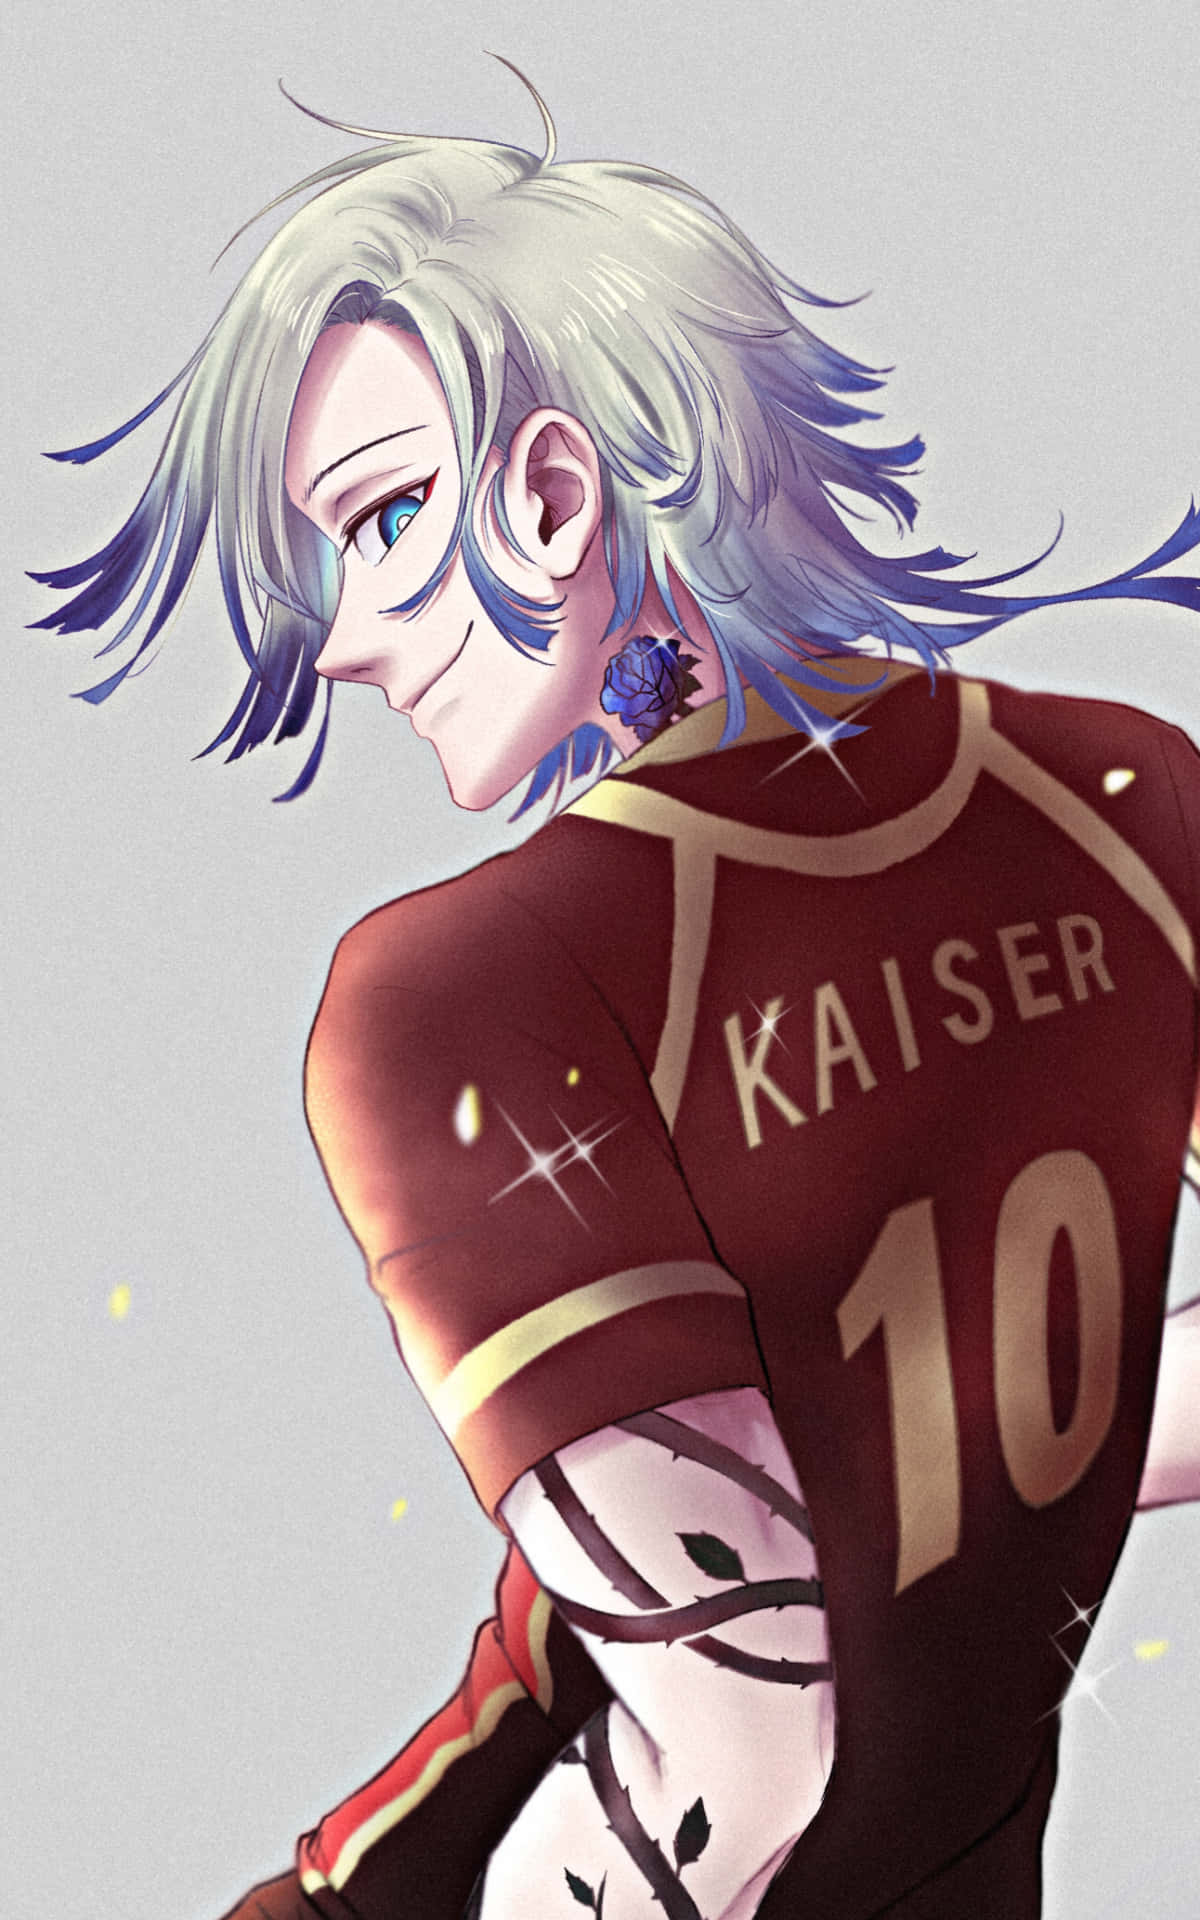 Kaiser10 Anime Character Wallpaper